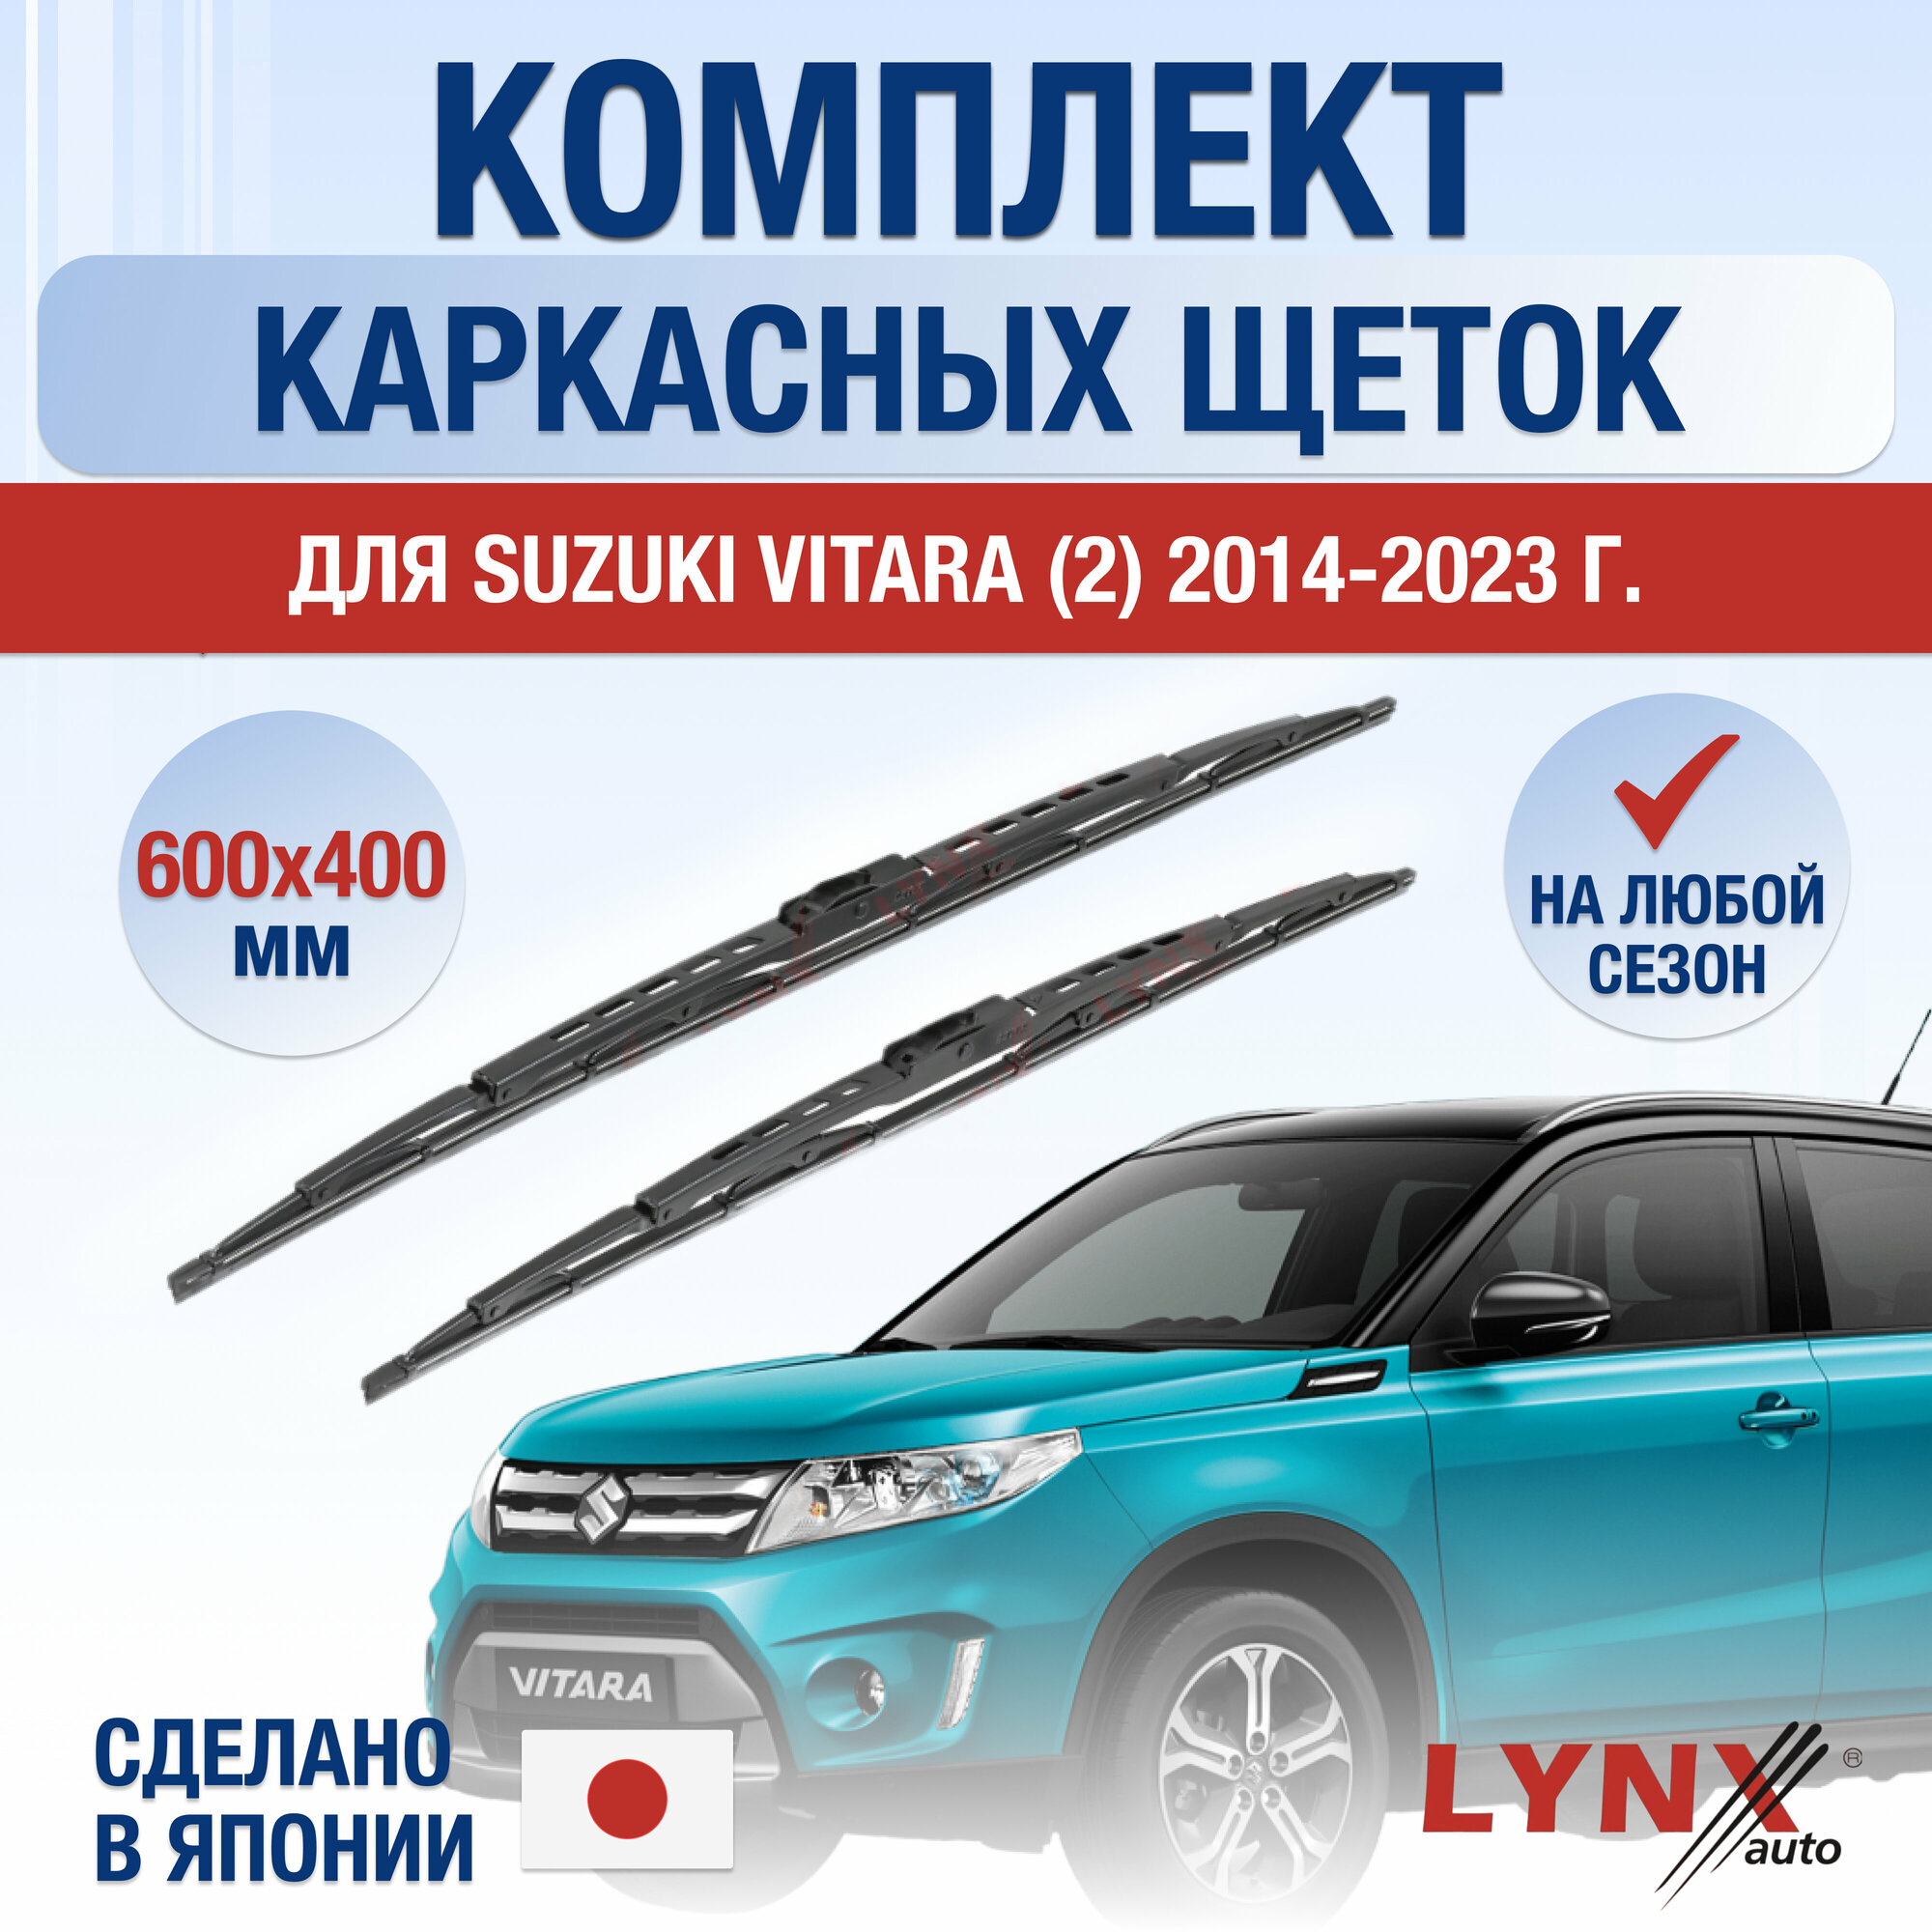 Щетки стеклоочистителя для Suzuki Vitara (2) LY / 2014 2015 2016 2017 2018 2019 2020 2021 2022 2023 2024 / Комплект каркасных дворников 600 400 мм Сузуки Витара